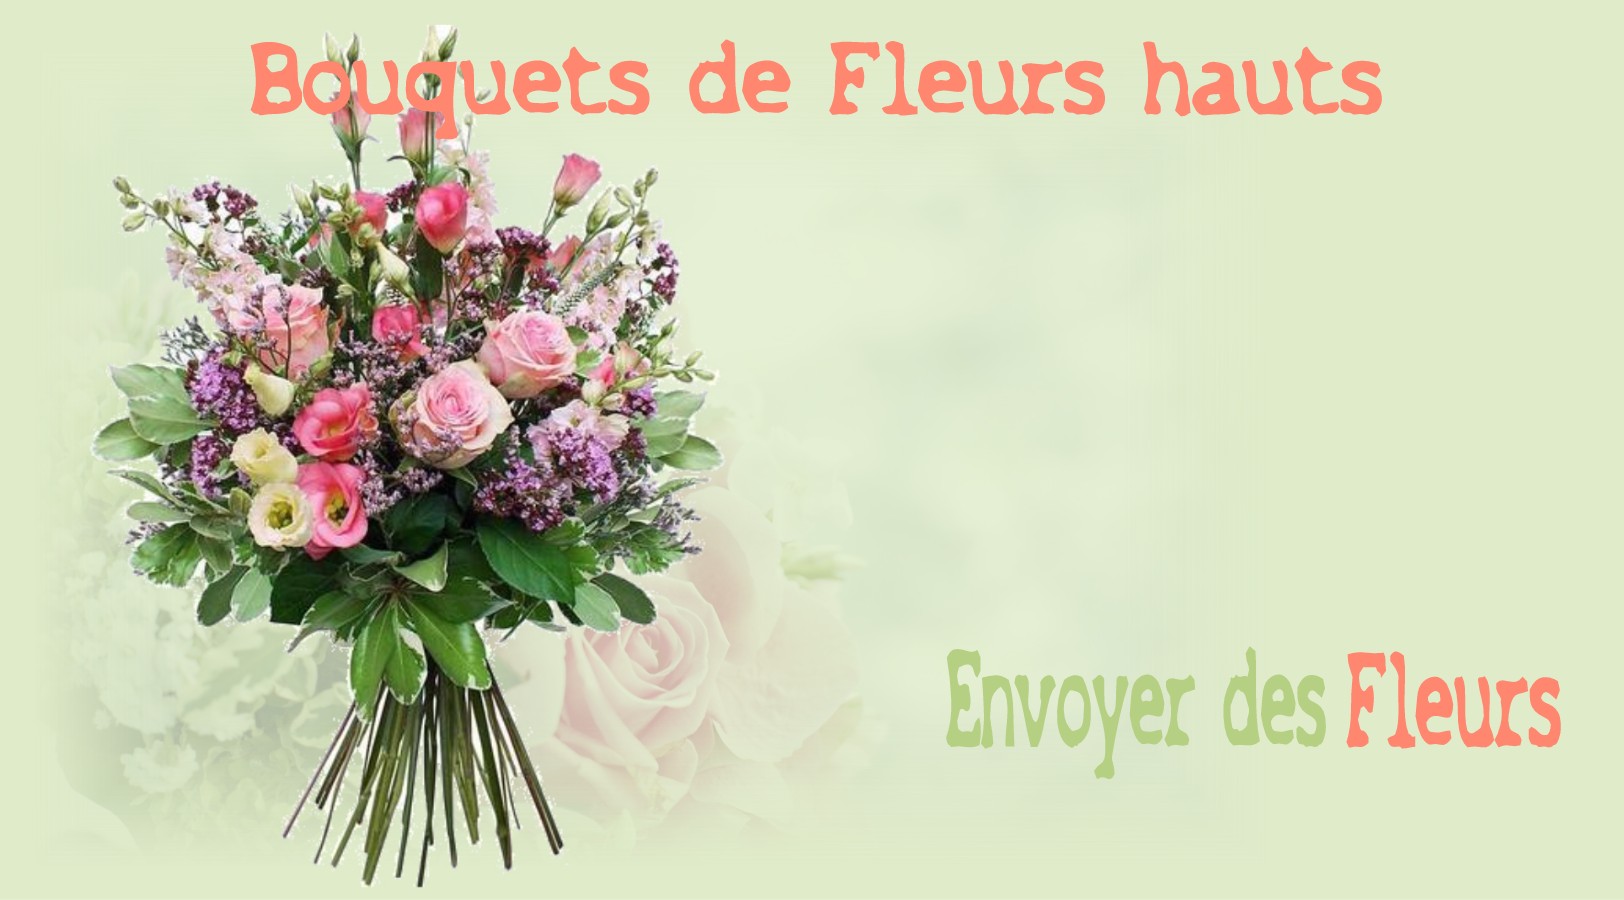 LES BOUQUETS HAUTS - FLEURISTE des ALPES MARITIMES - ENVOYER DES FLEURS